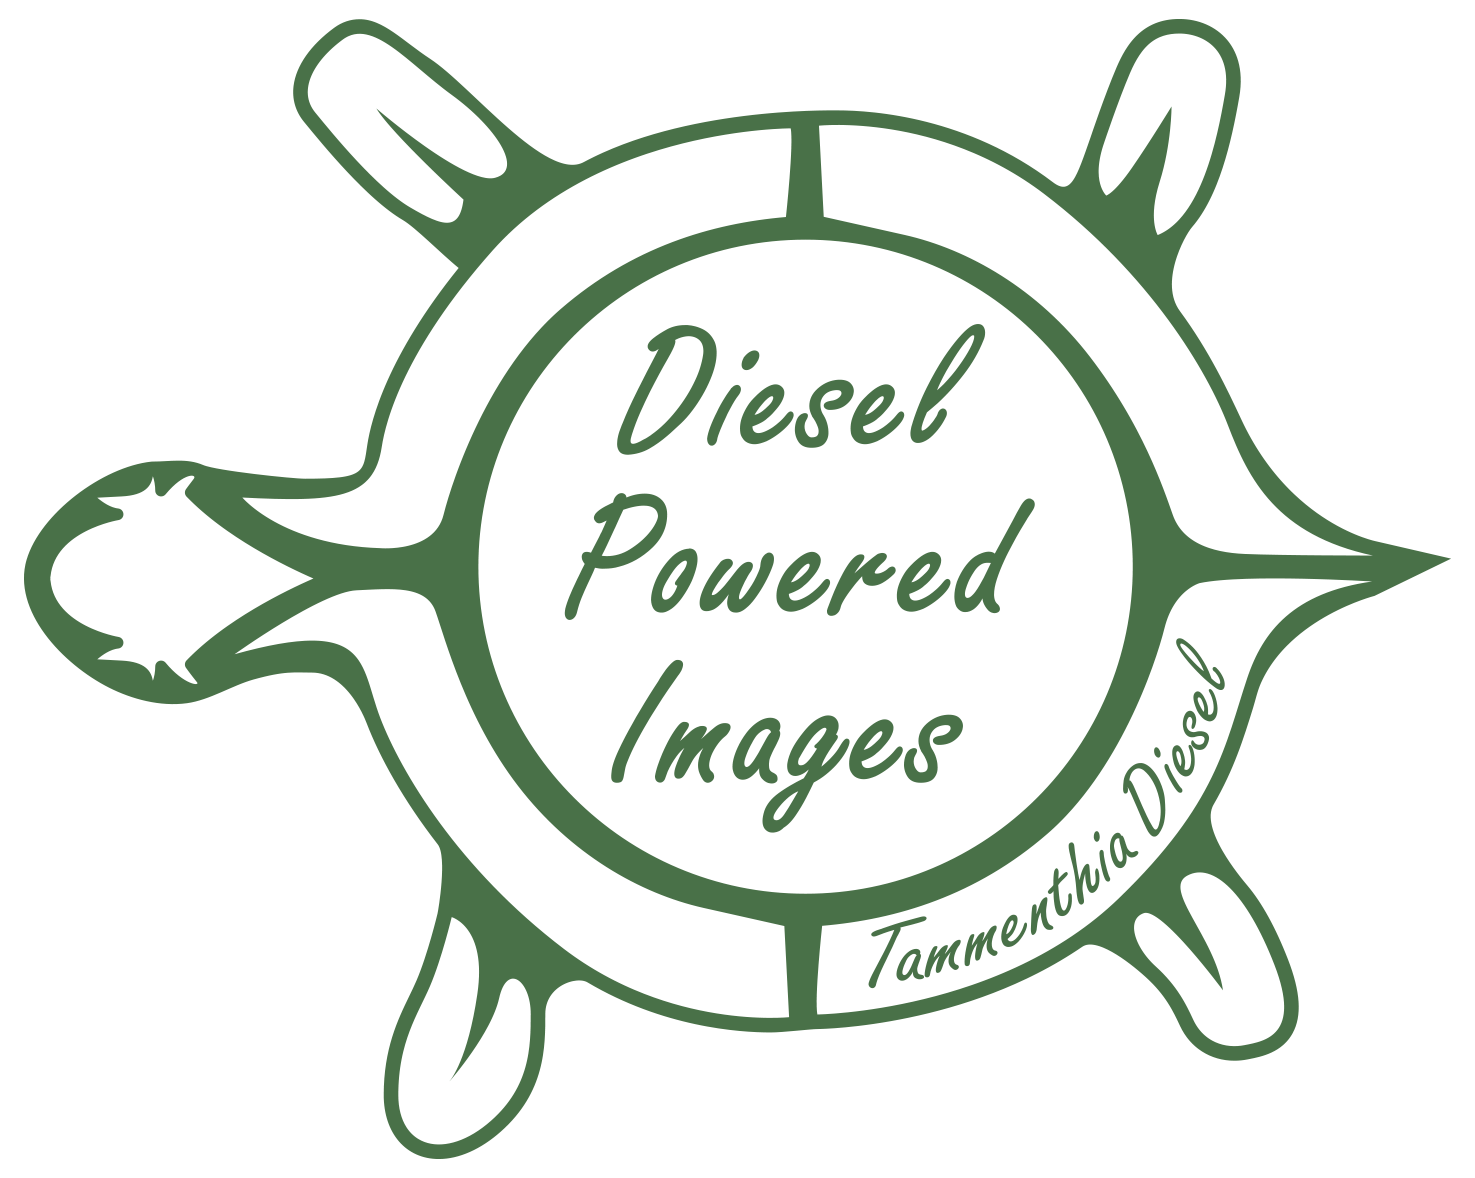 Diesel Powered Images